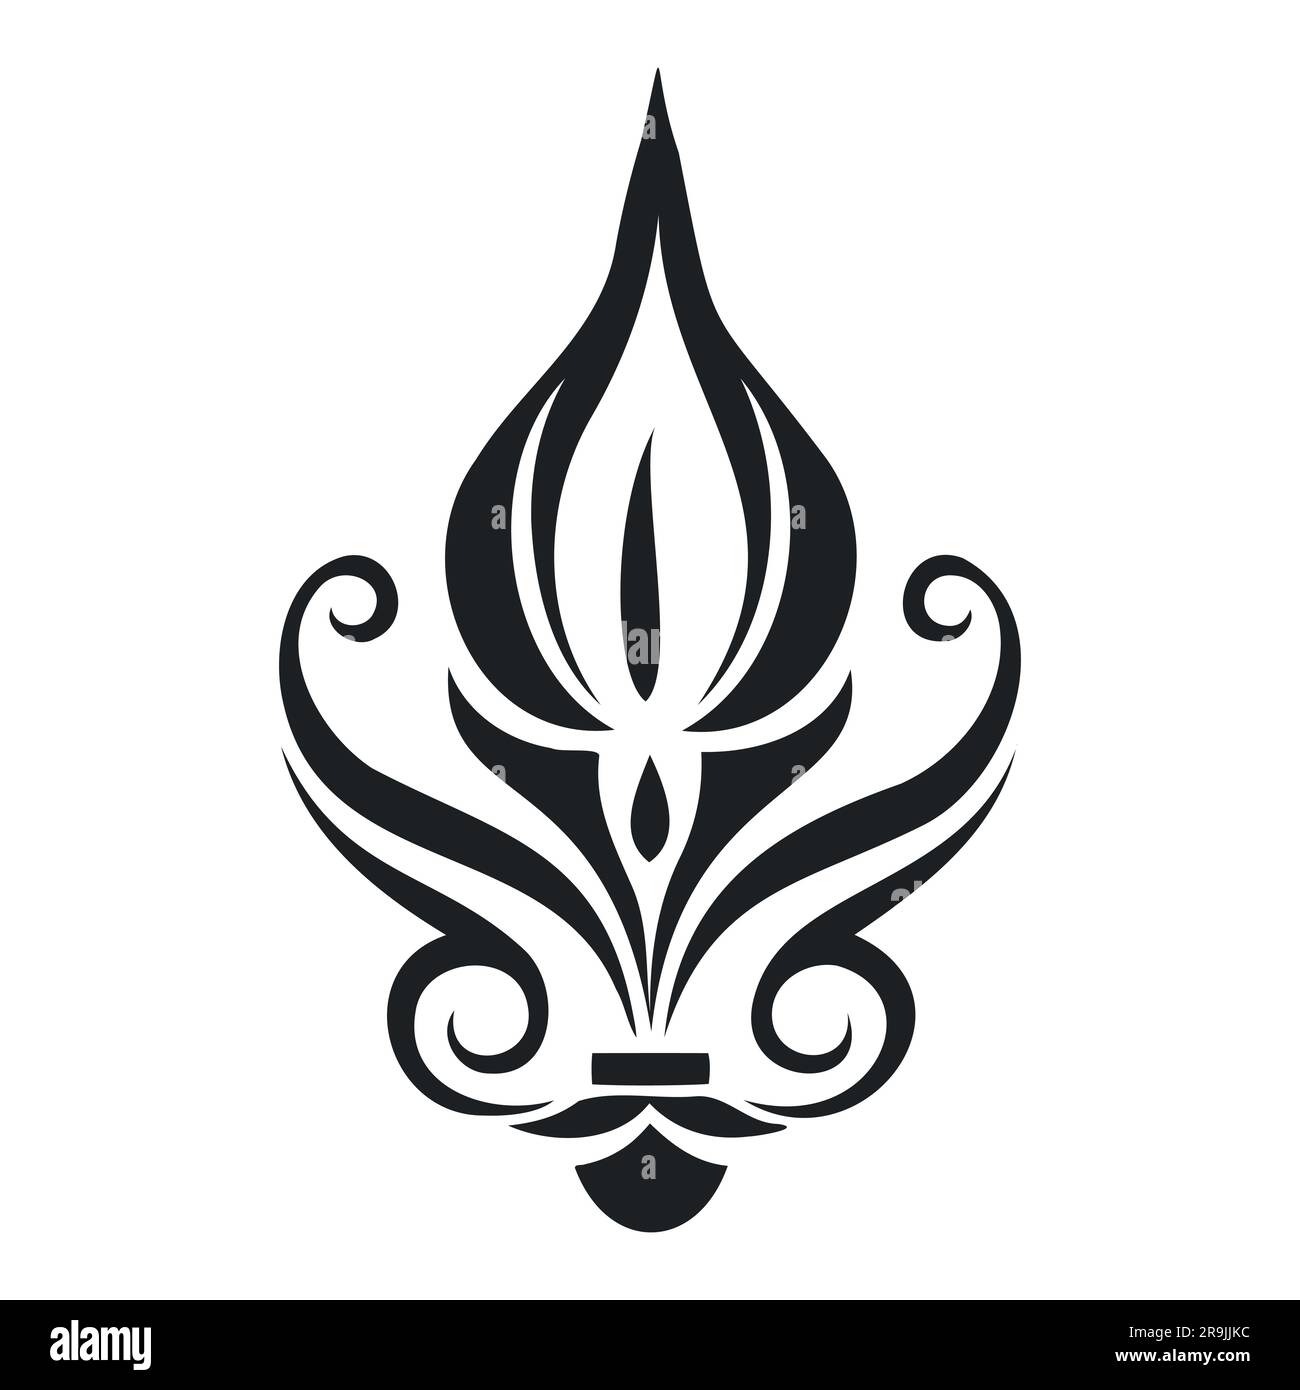 Abstraktes Kerzensymbol. Stilisiertes brennendes Feuer. Das Symbol der Romantik. Darstellung isolierter Vektoren auf weißem Hintergrund. Stock Vektor